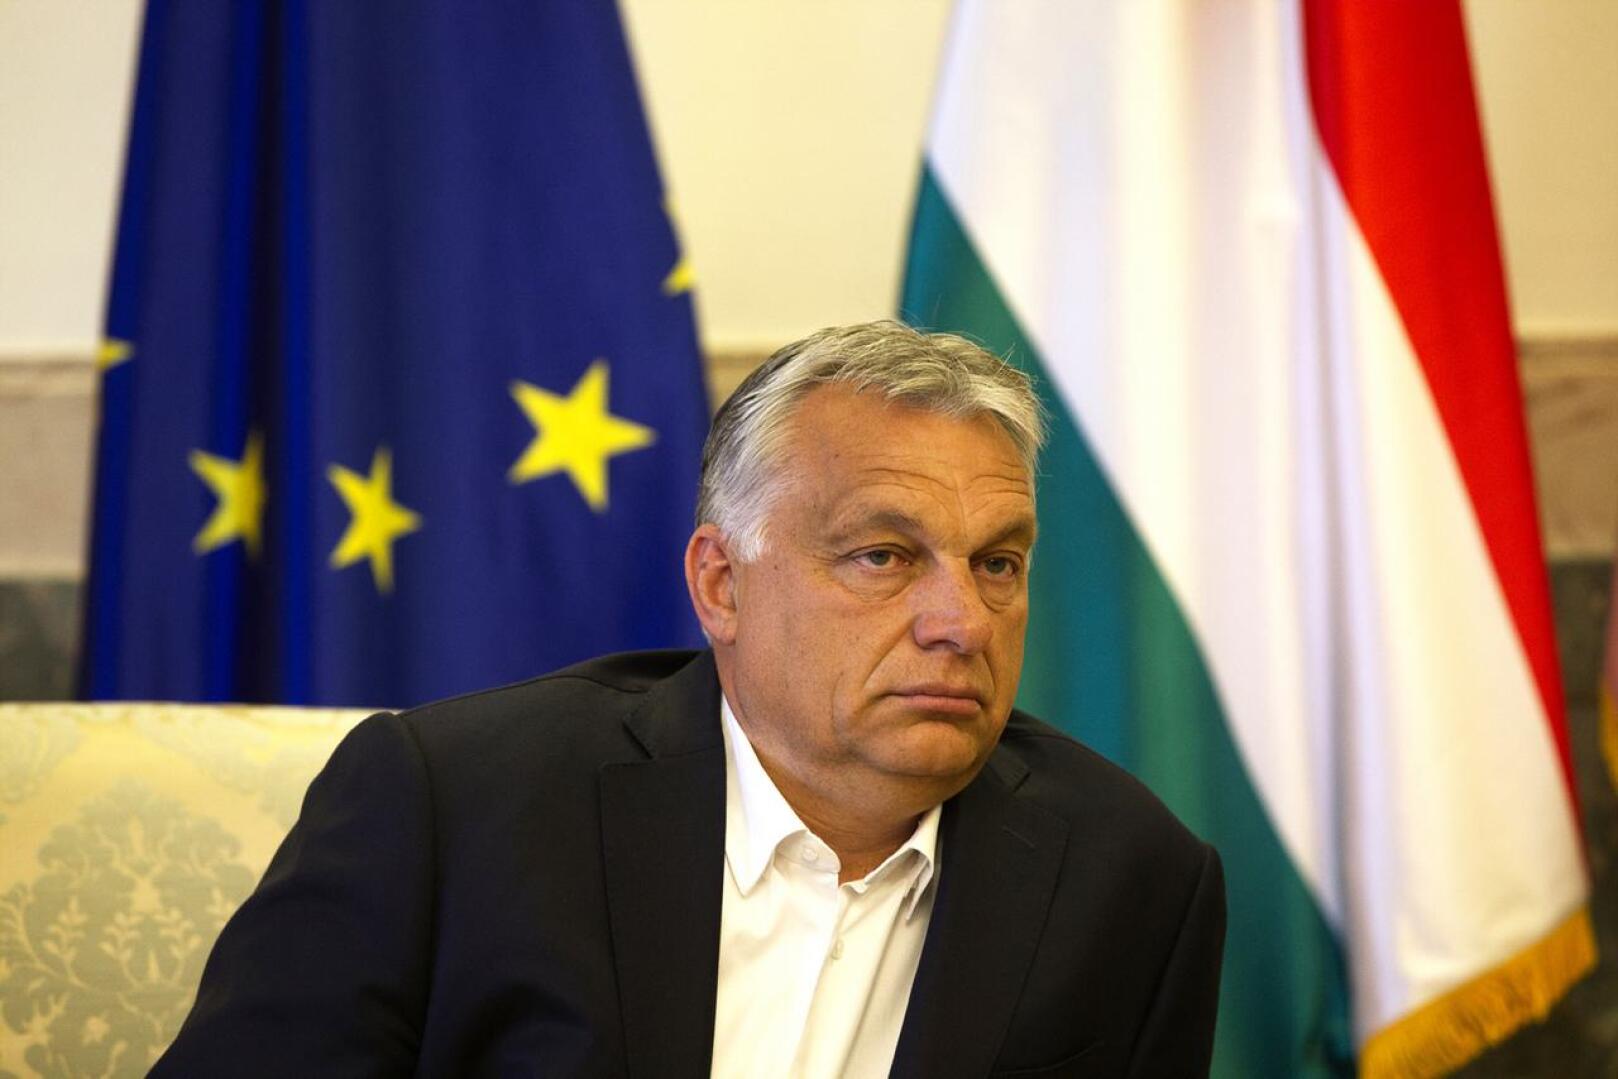 Unkarin hallitus antoi pääministeri Viktor Orbánille oikeudet hallita asetuksilla. Tätä on arvosteltu ankarasti.